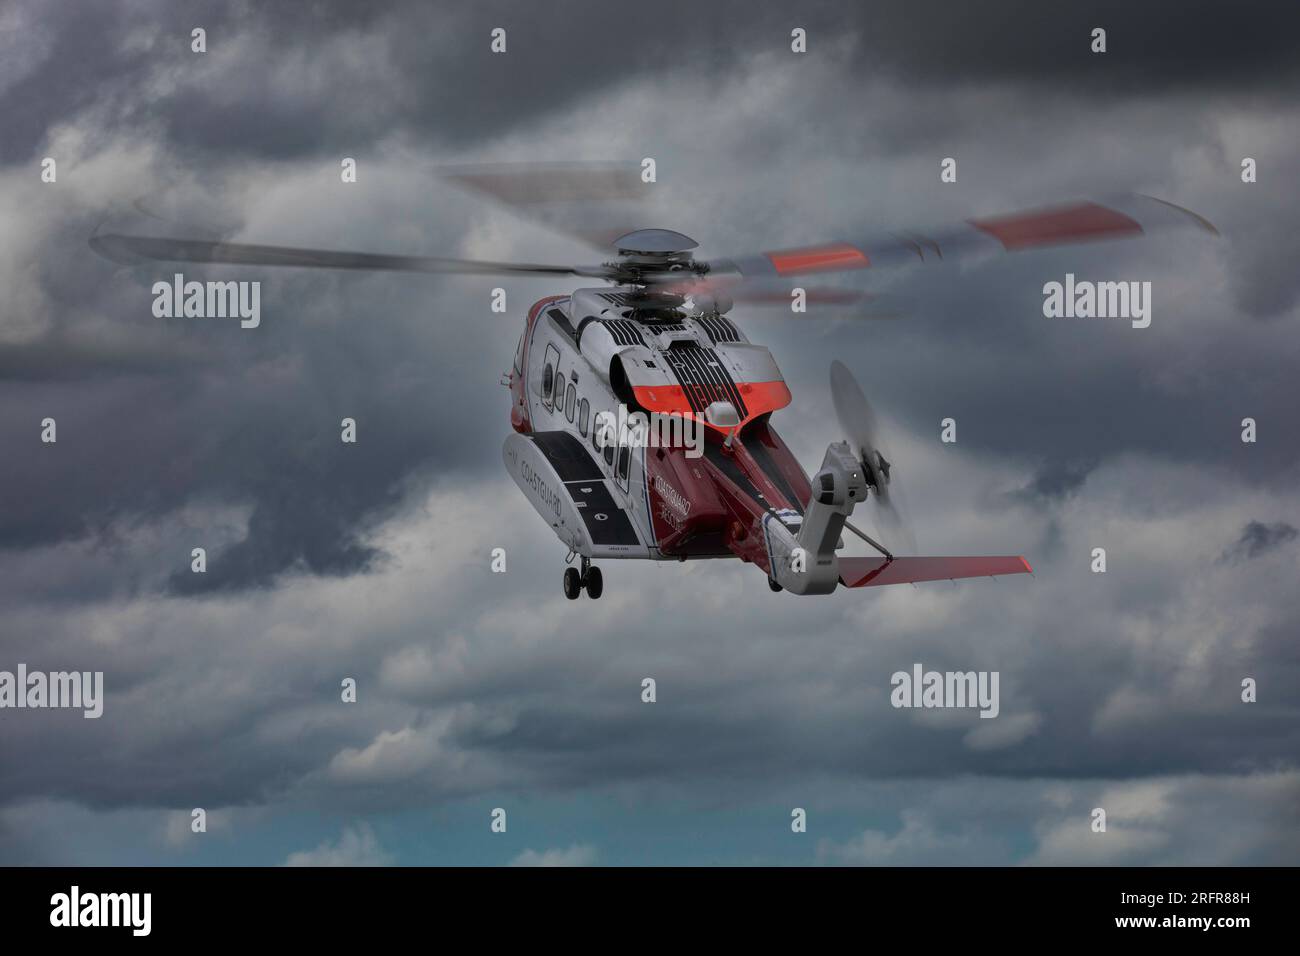 Elicottero Coastguard Rescue all'aeroporto di Caernarfon Foto Stock